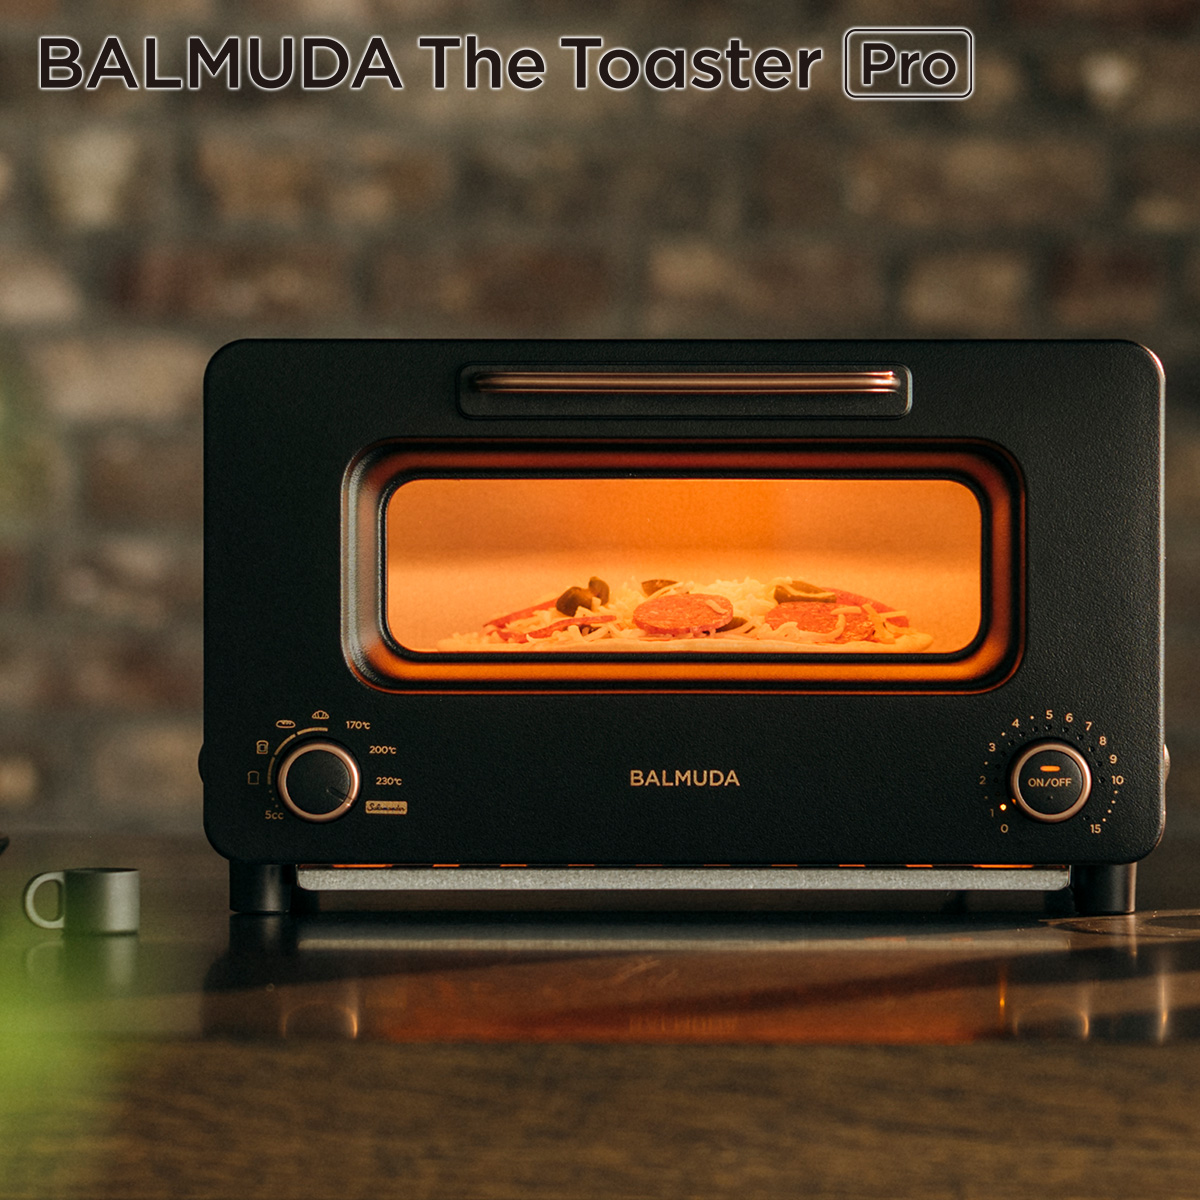 【マツコの知らない世界で紹介】ザ・トースター [30日間全額返金保証] 正規品 BALMUDA The Toaster Pro ザ・トースター プロ スチームトースター  サラマンダー 食パン 2枚 おしゃれ ブラック